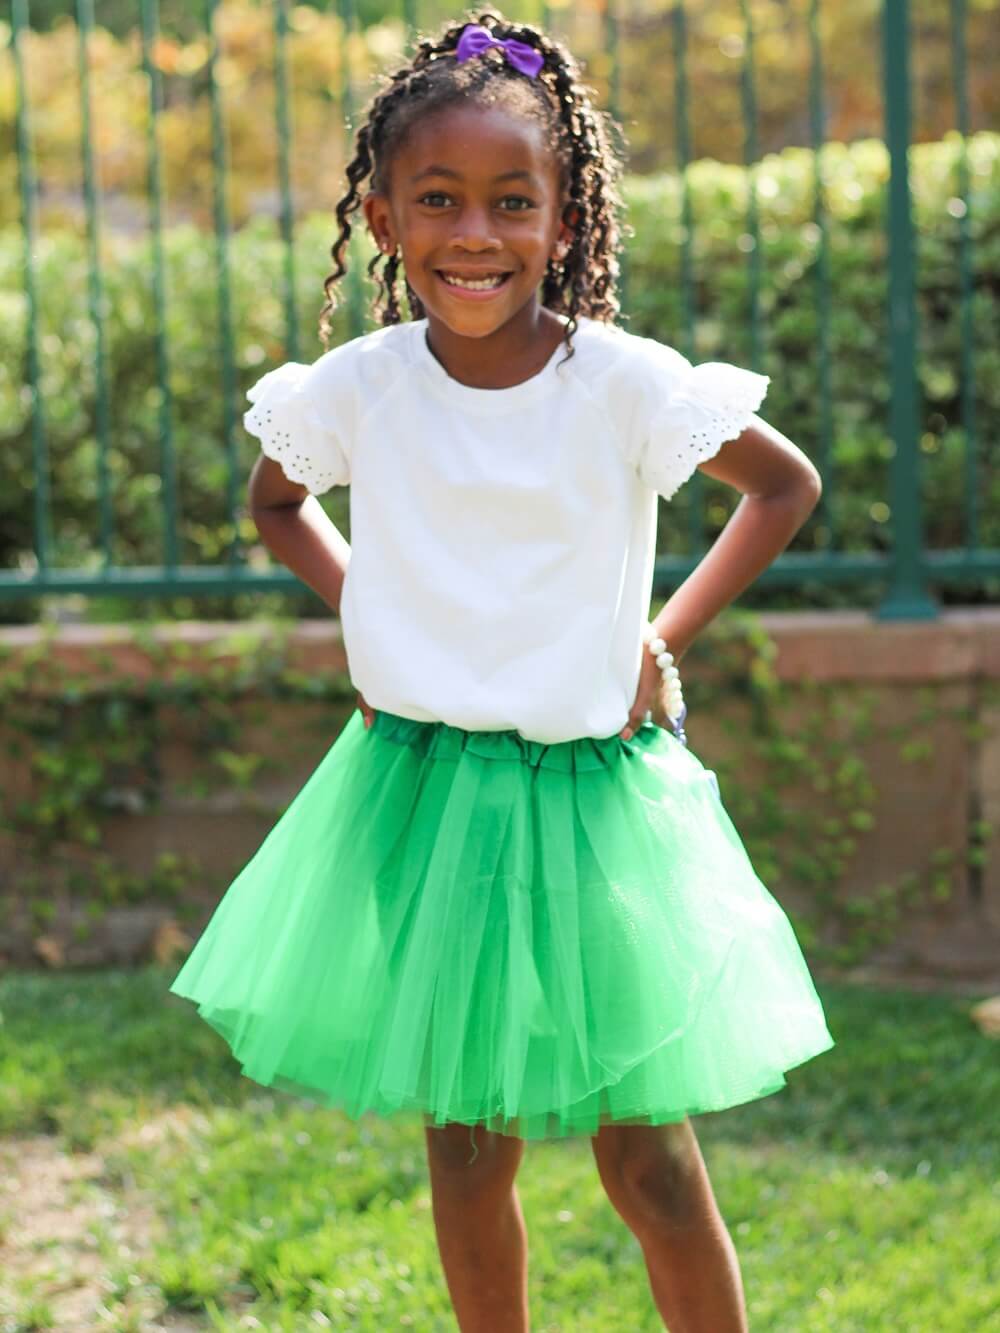 Green Tutu Skirt - Kids Size 3-Layer Tulle Basic Ballet Dance Costume Tutus for Girls - Sydney So Sweet